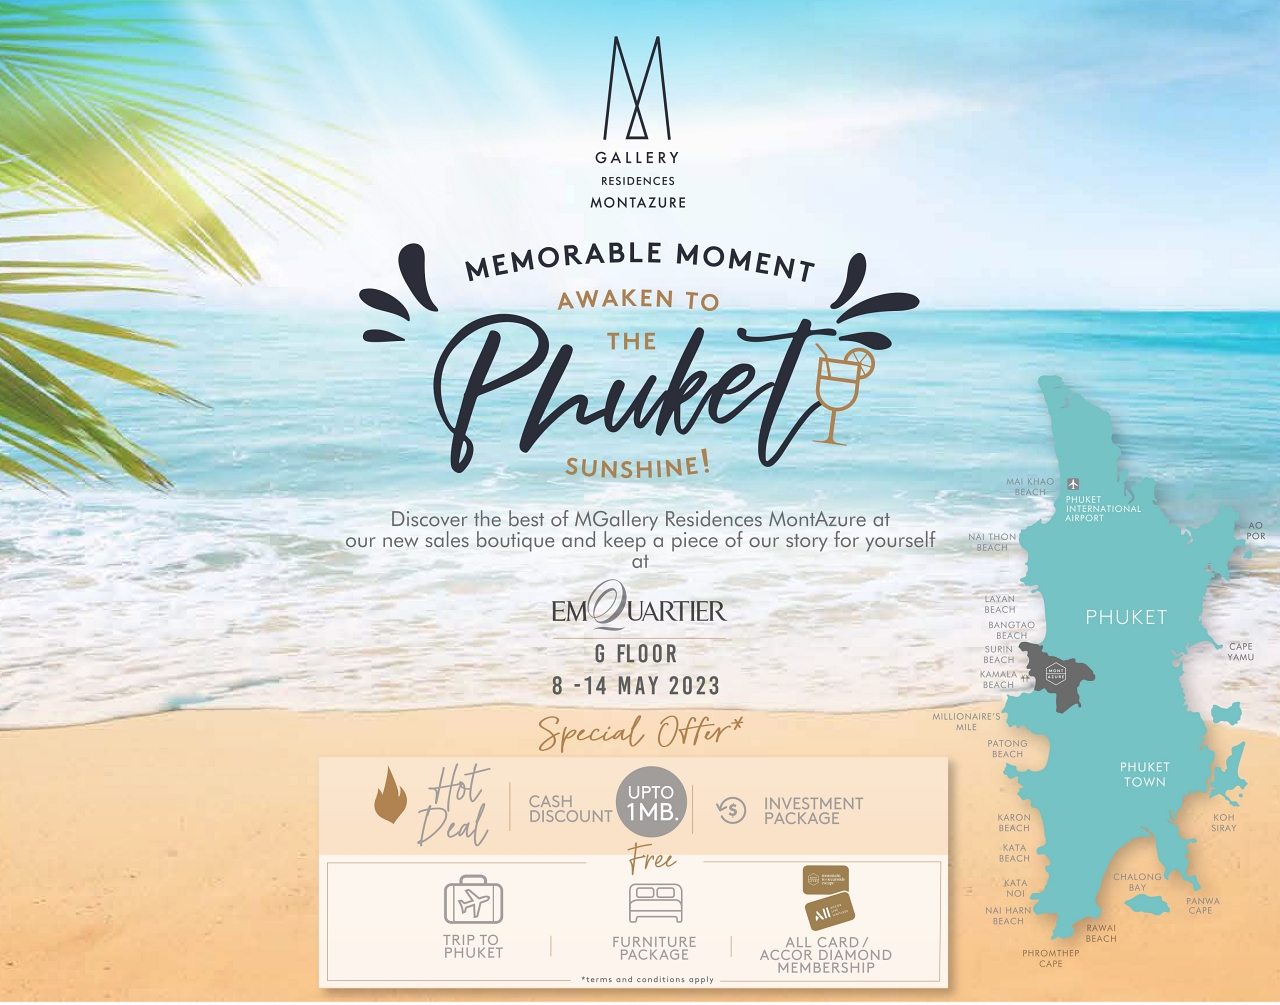 มอนท์เอซัวร์ ภูเก็ต ชวนสัมผัสประสบการณ์ระดับเอ็กซ์คลูซีฟ ในงาน Memorable Moment – Awaken to the Phuket Sunshine